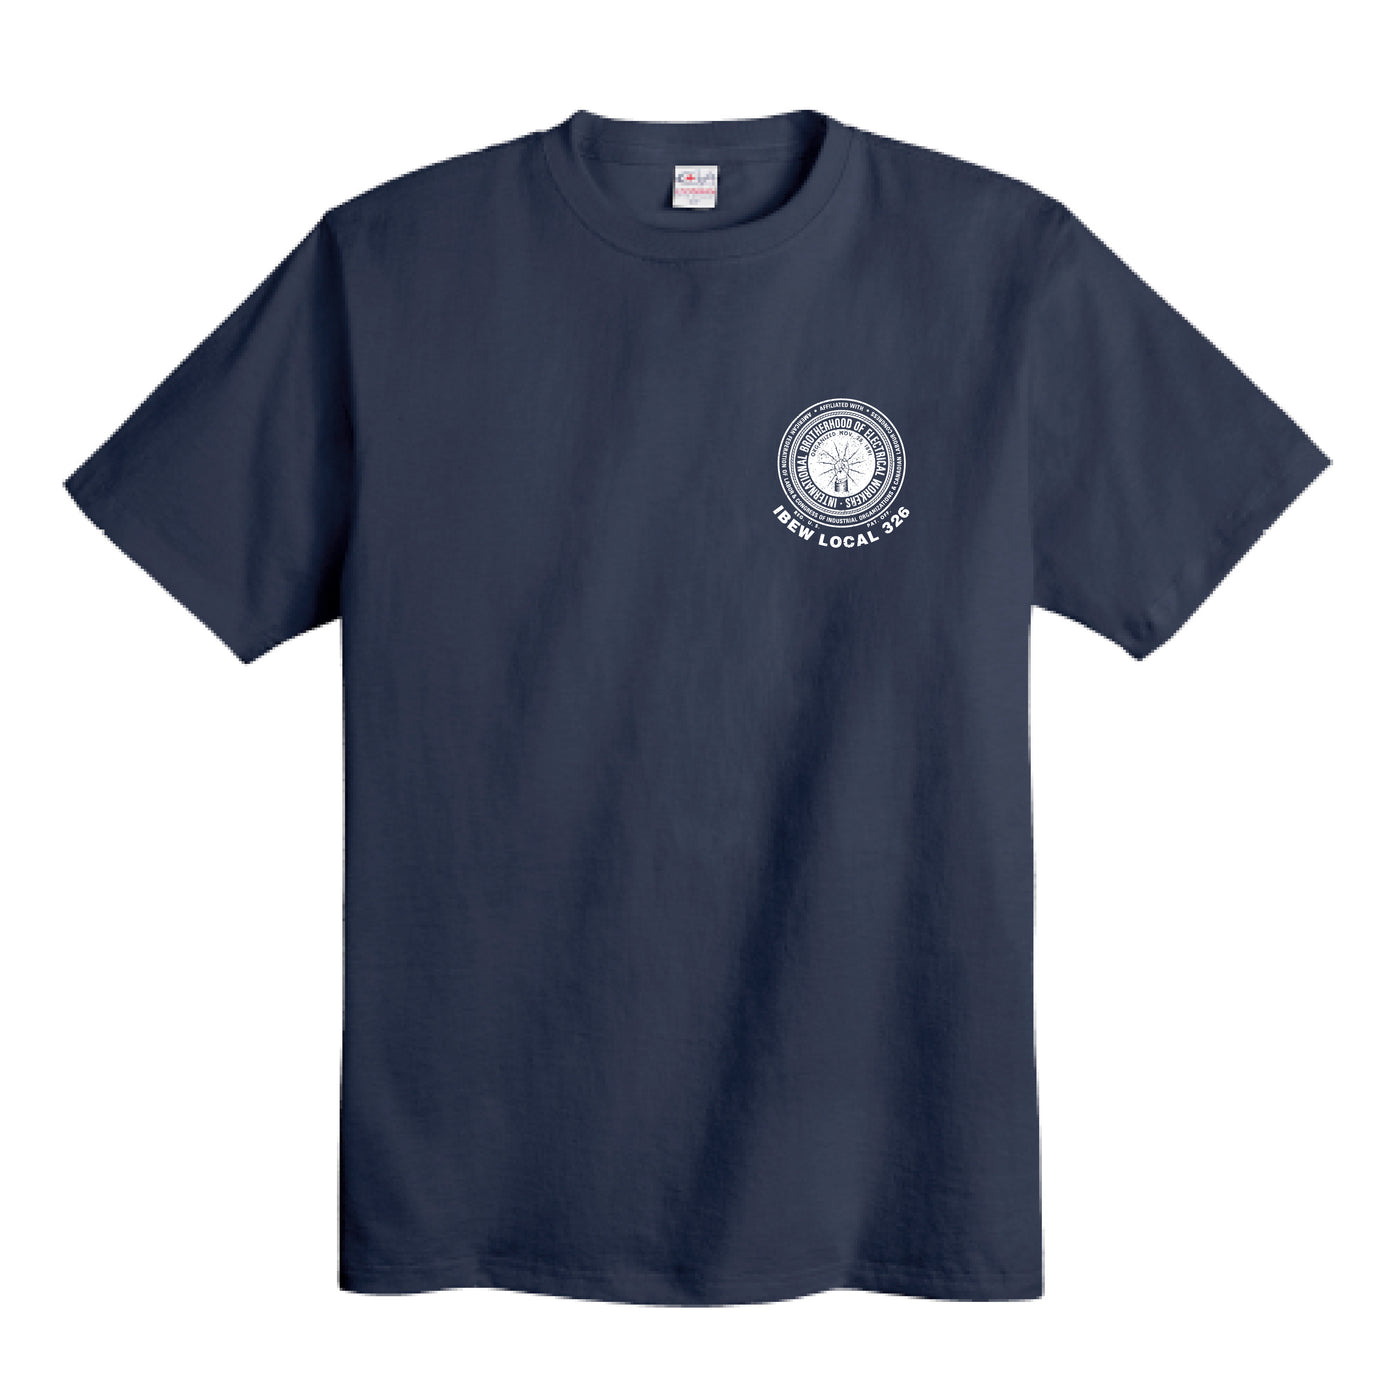 FIOE 326 Logo en détresse - T-shirt unisexe (marine)